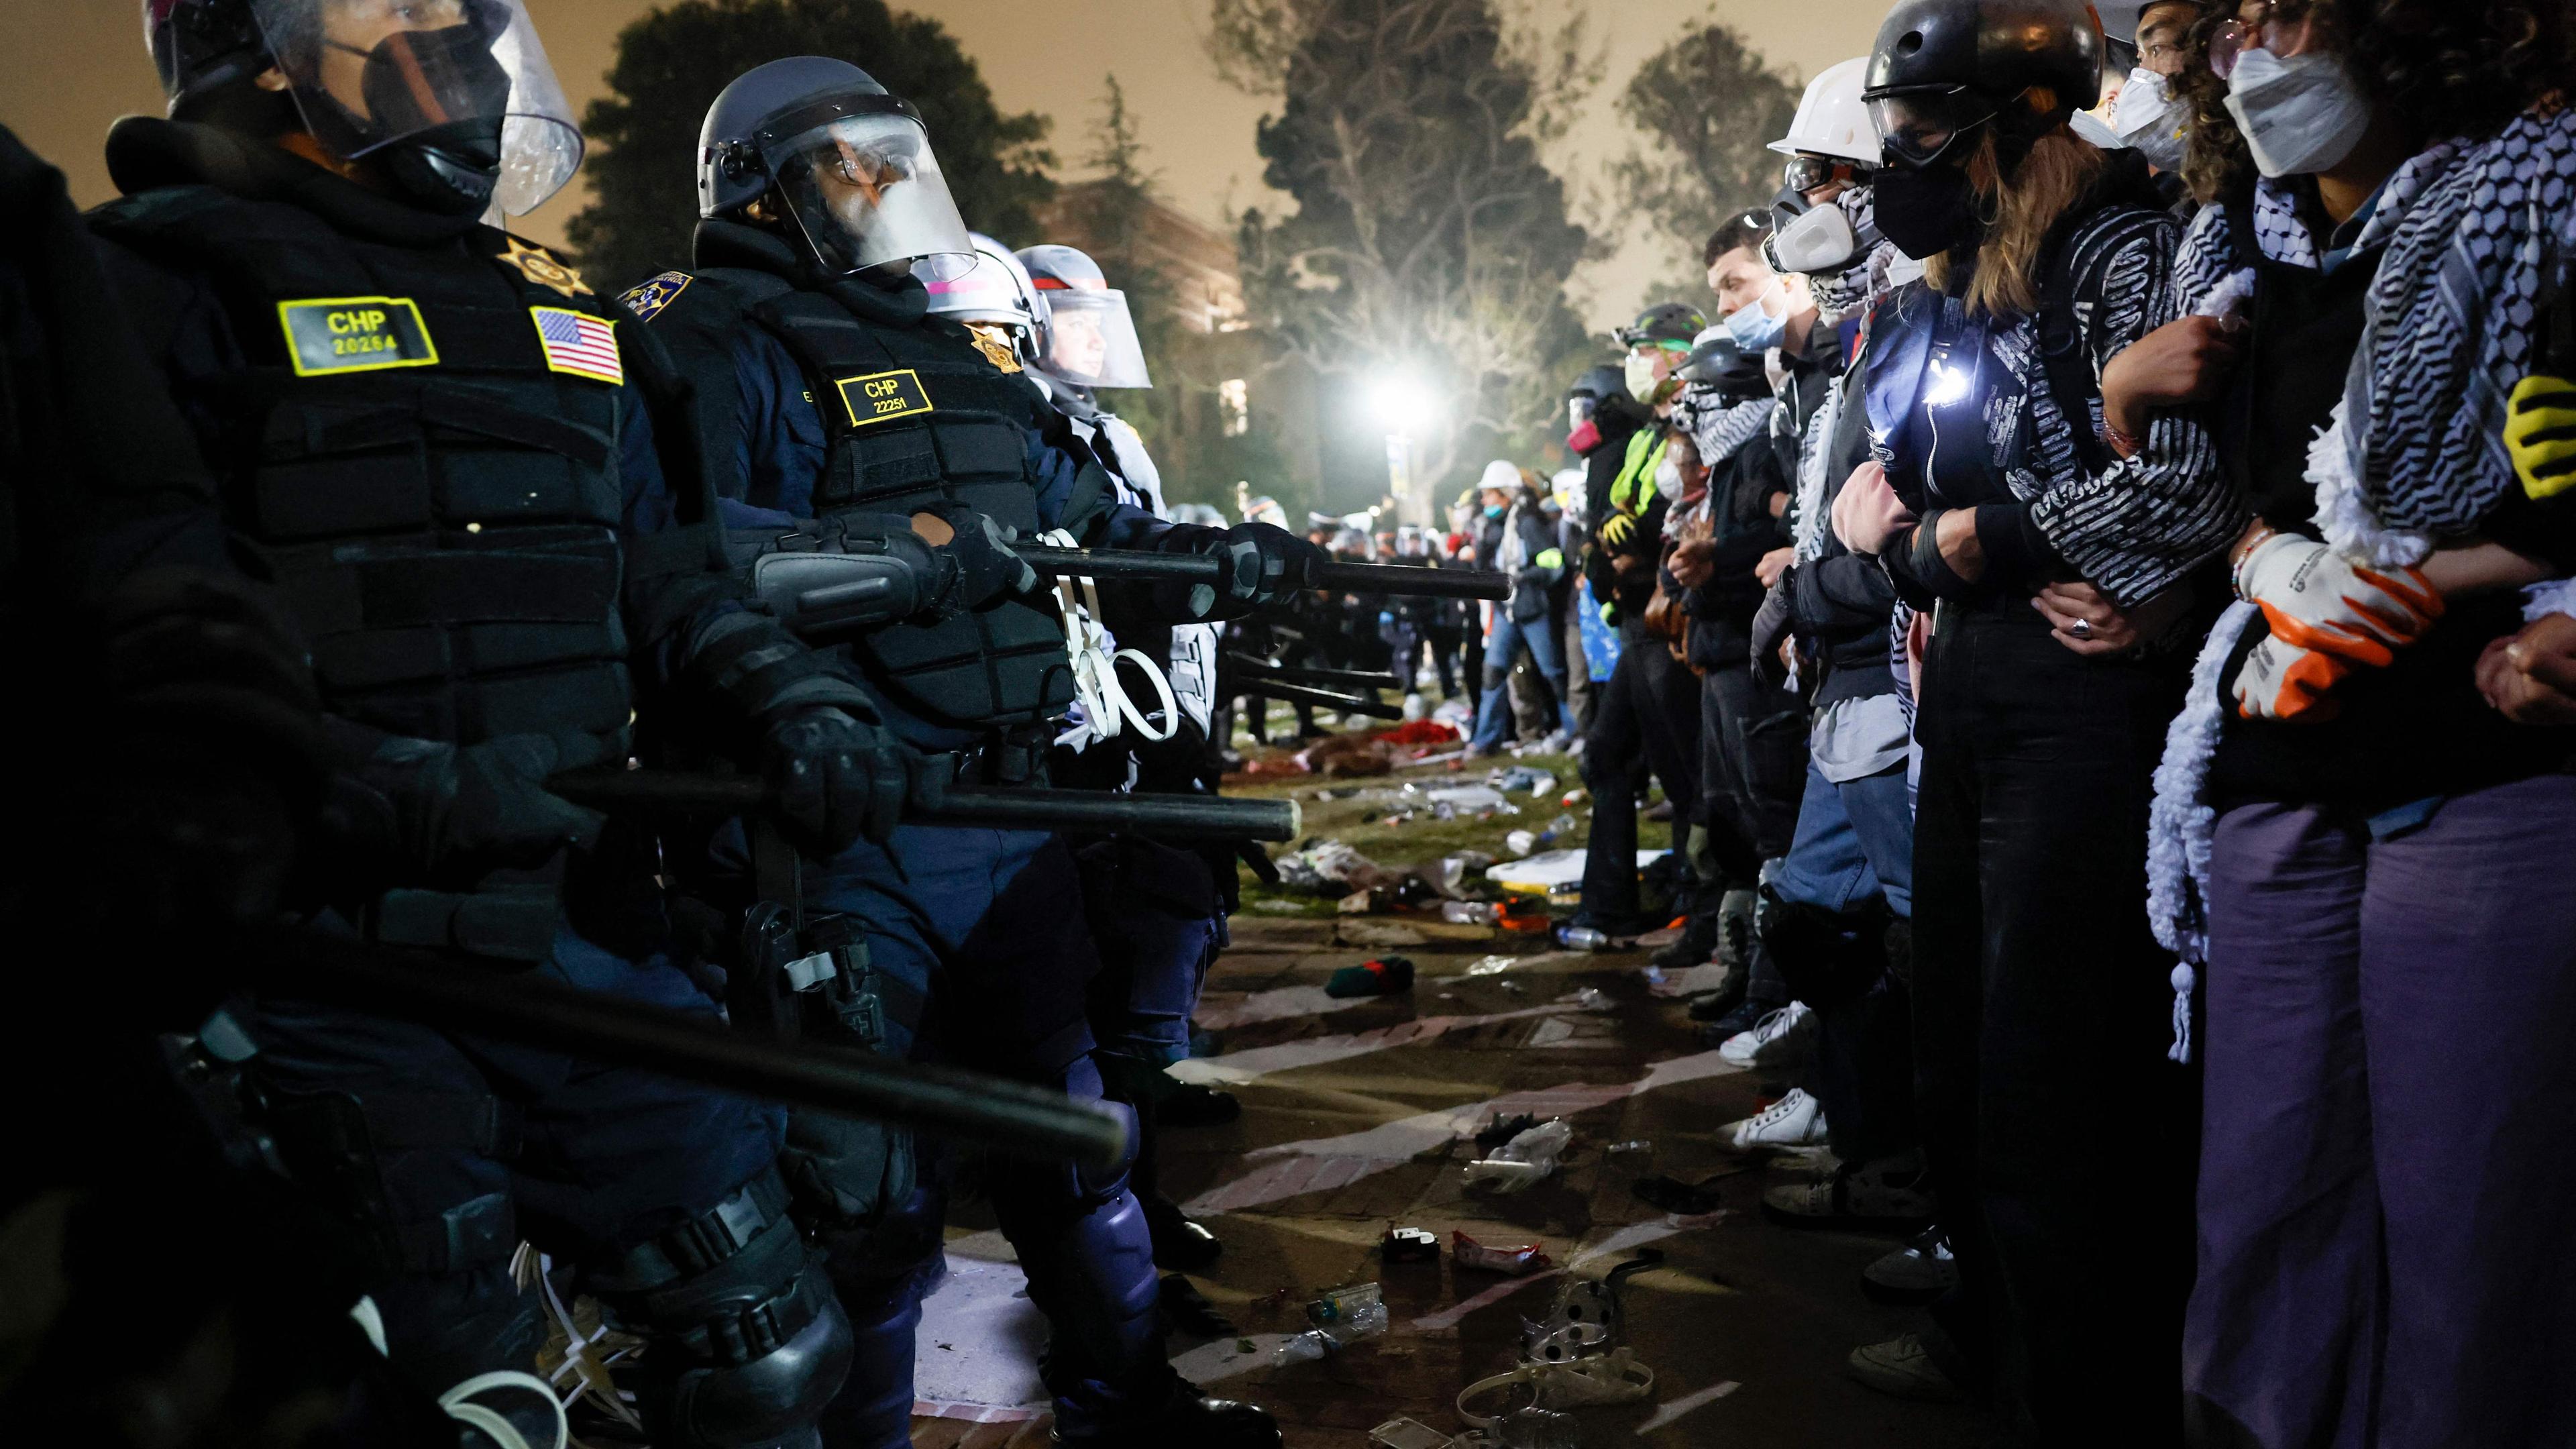 Am Donnerstag standen sich auf dem Campusder University of California, Los Angeles (UCLA) Einsatzkräfte und Demonstranten gegenüber.